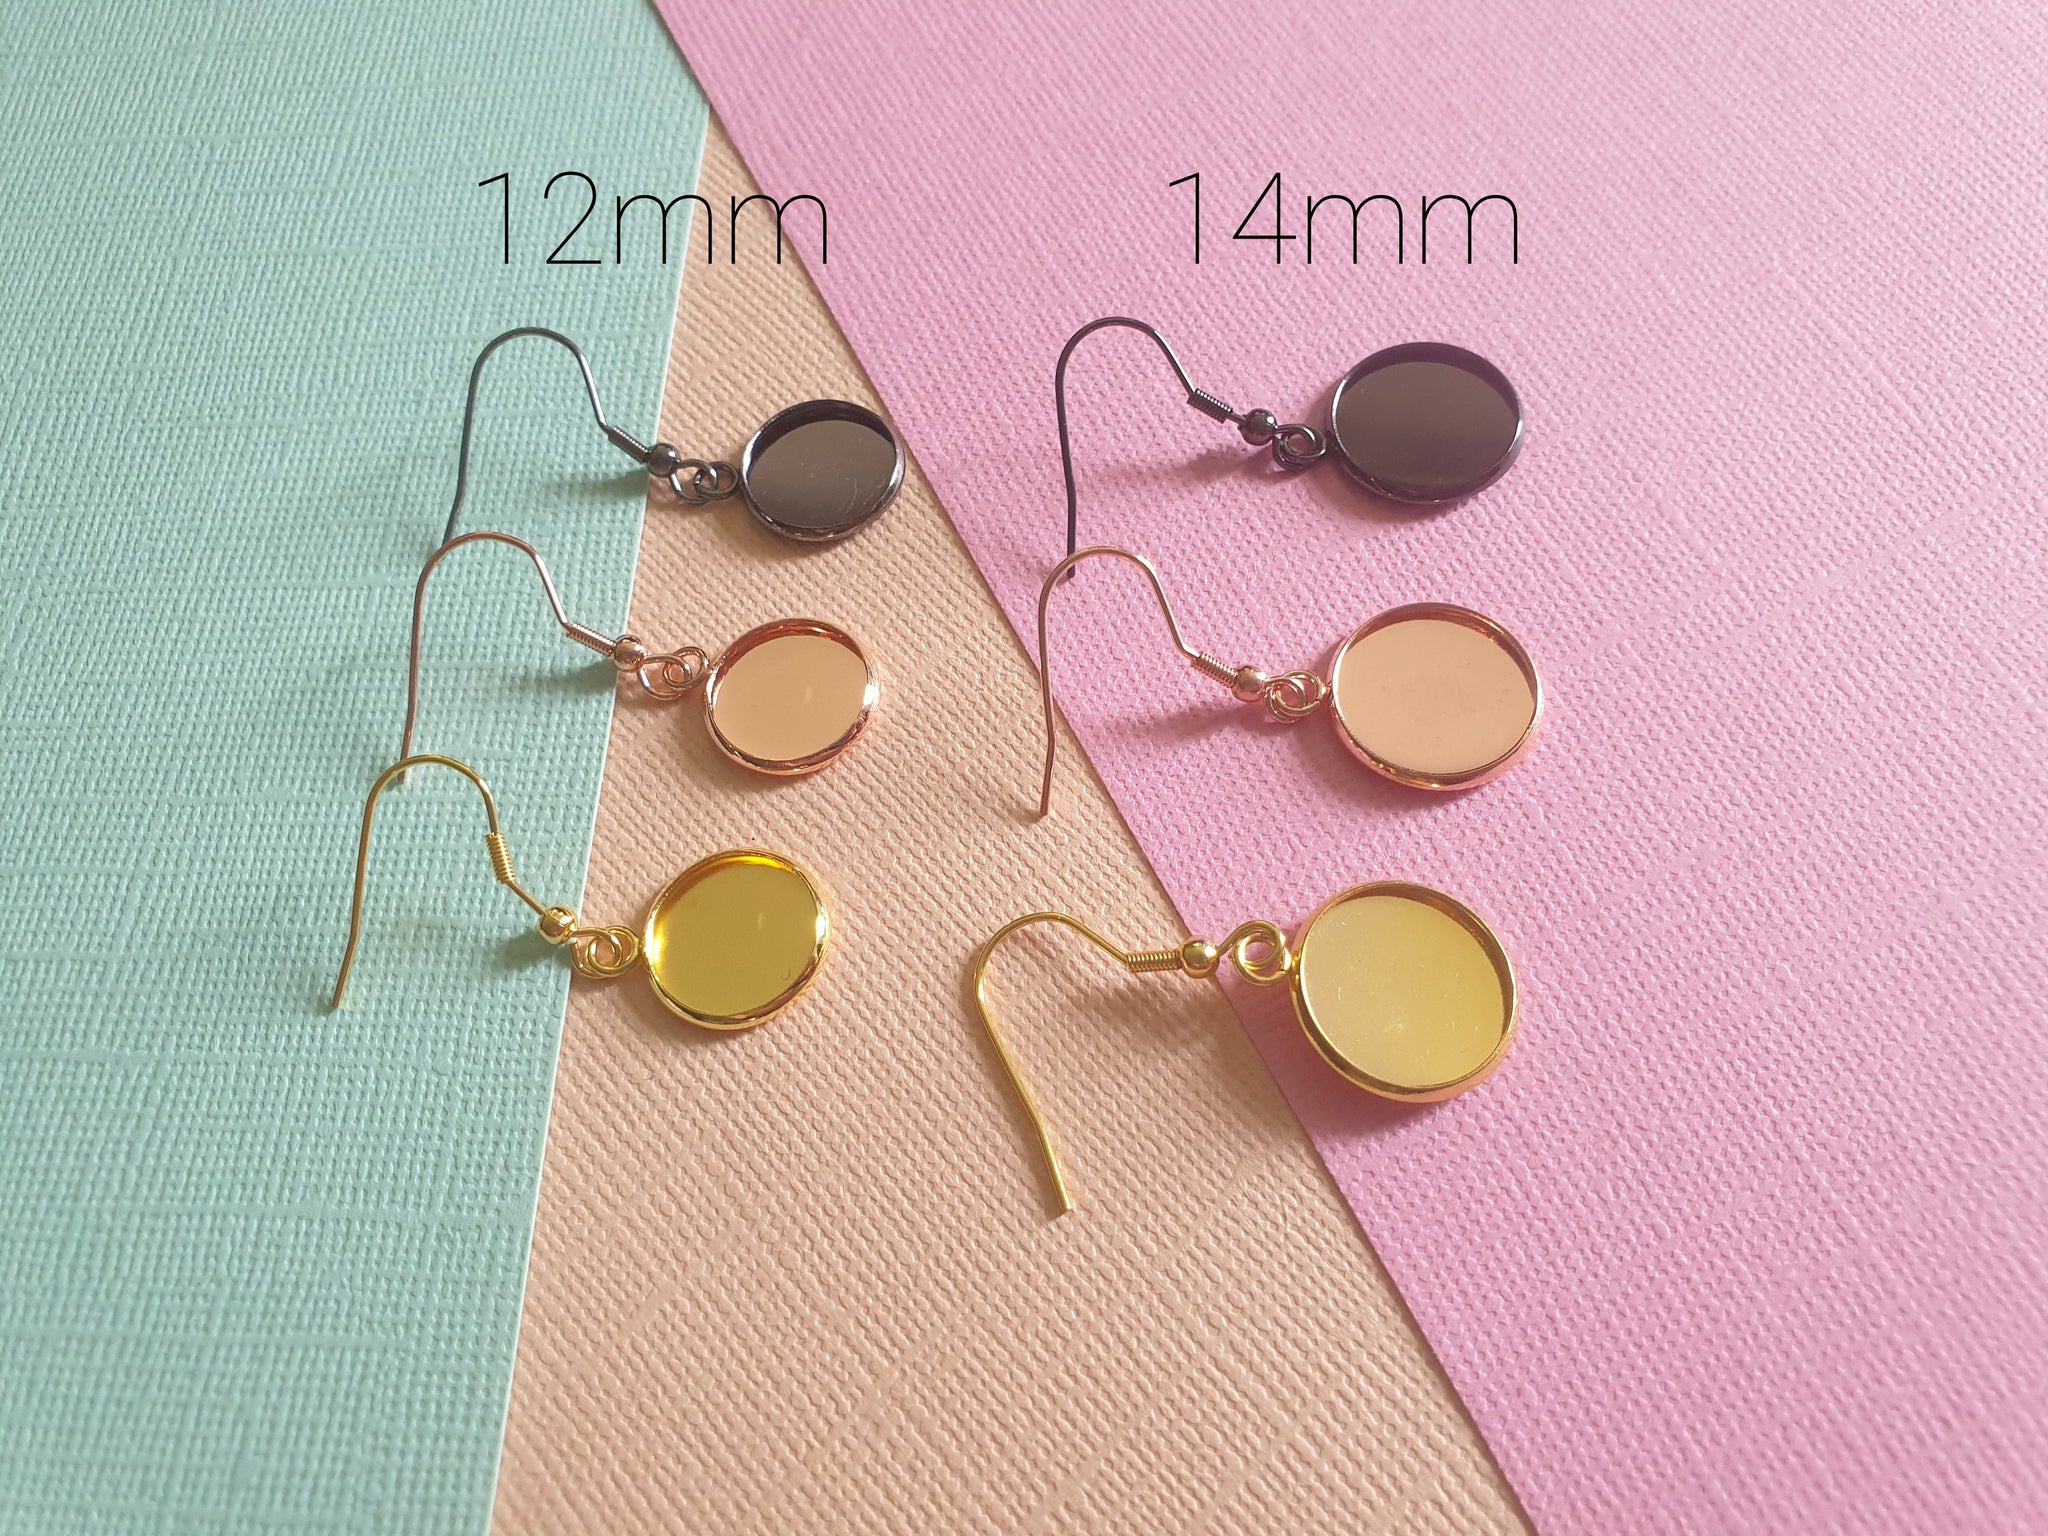 French Earrings Hook 10-20pcs Earring Settings Base Hoop Wire Jewelry  Making Kit